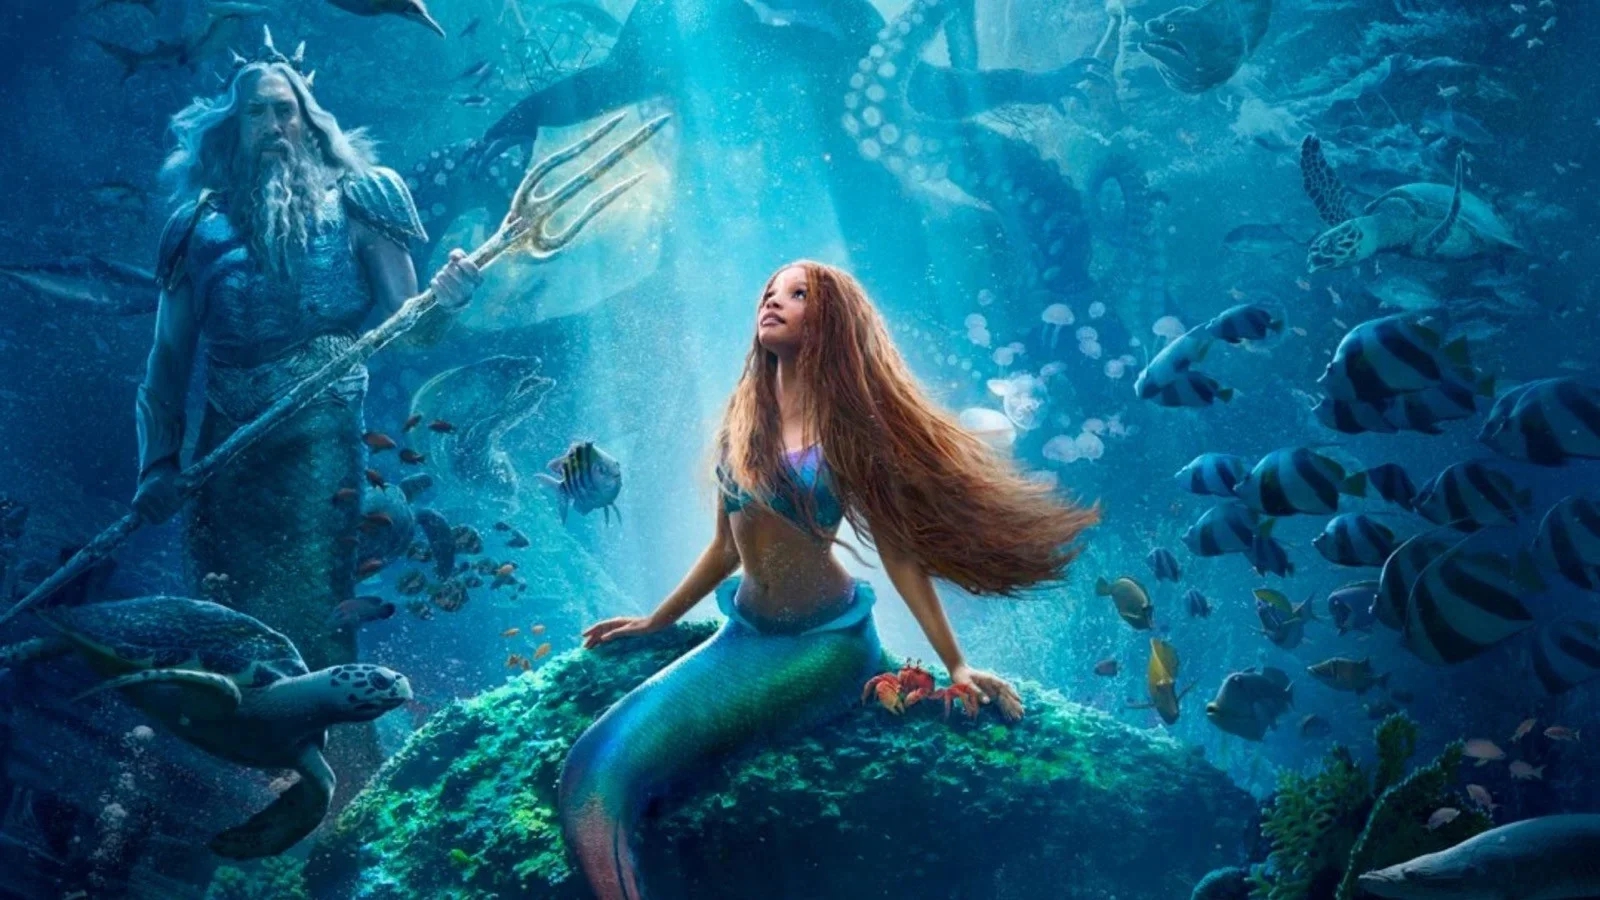 La Sirenetta batte un nuovo record di streaming con l'uscita su Disney+